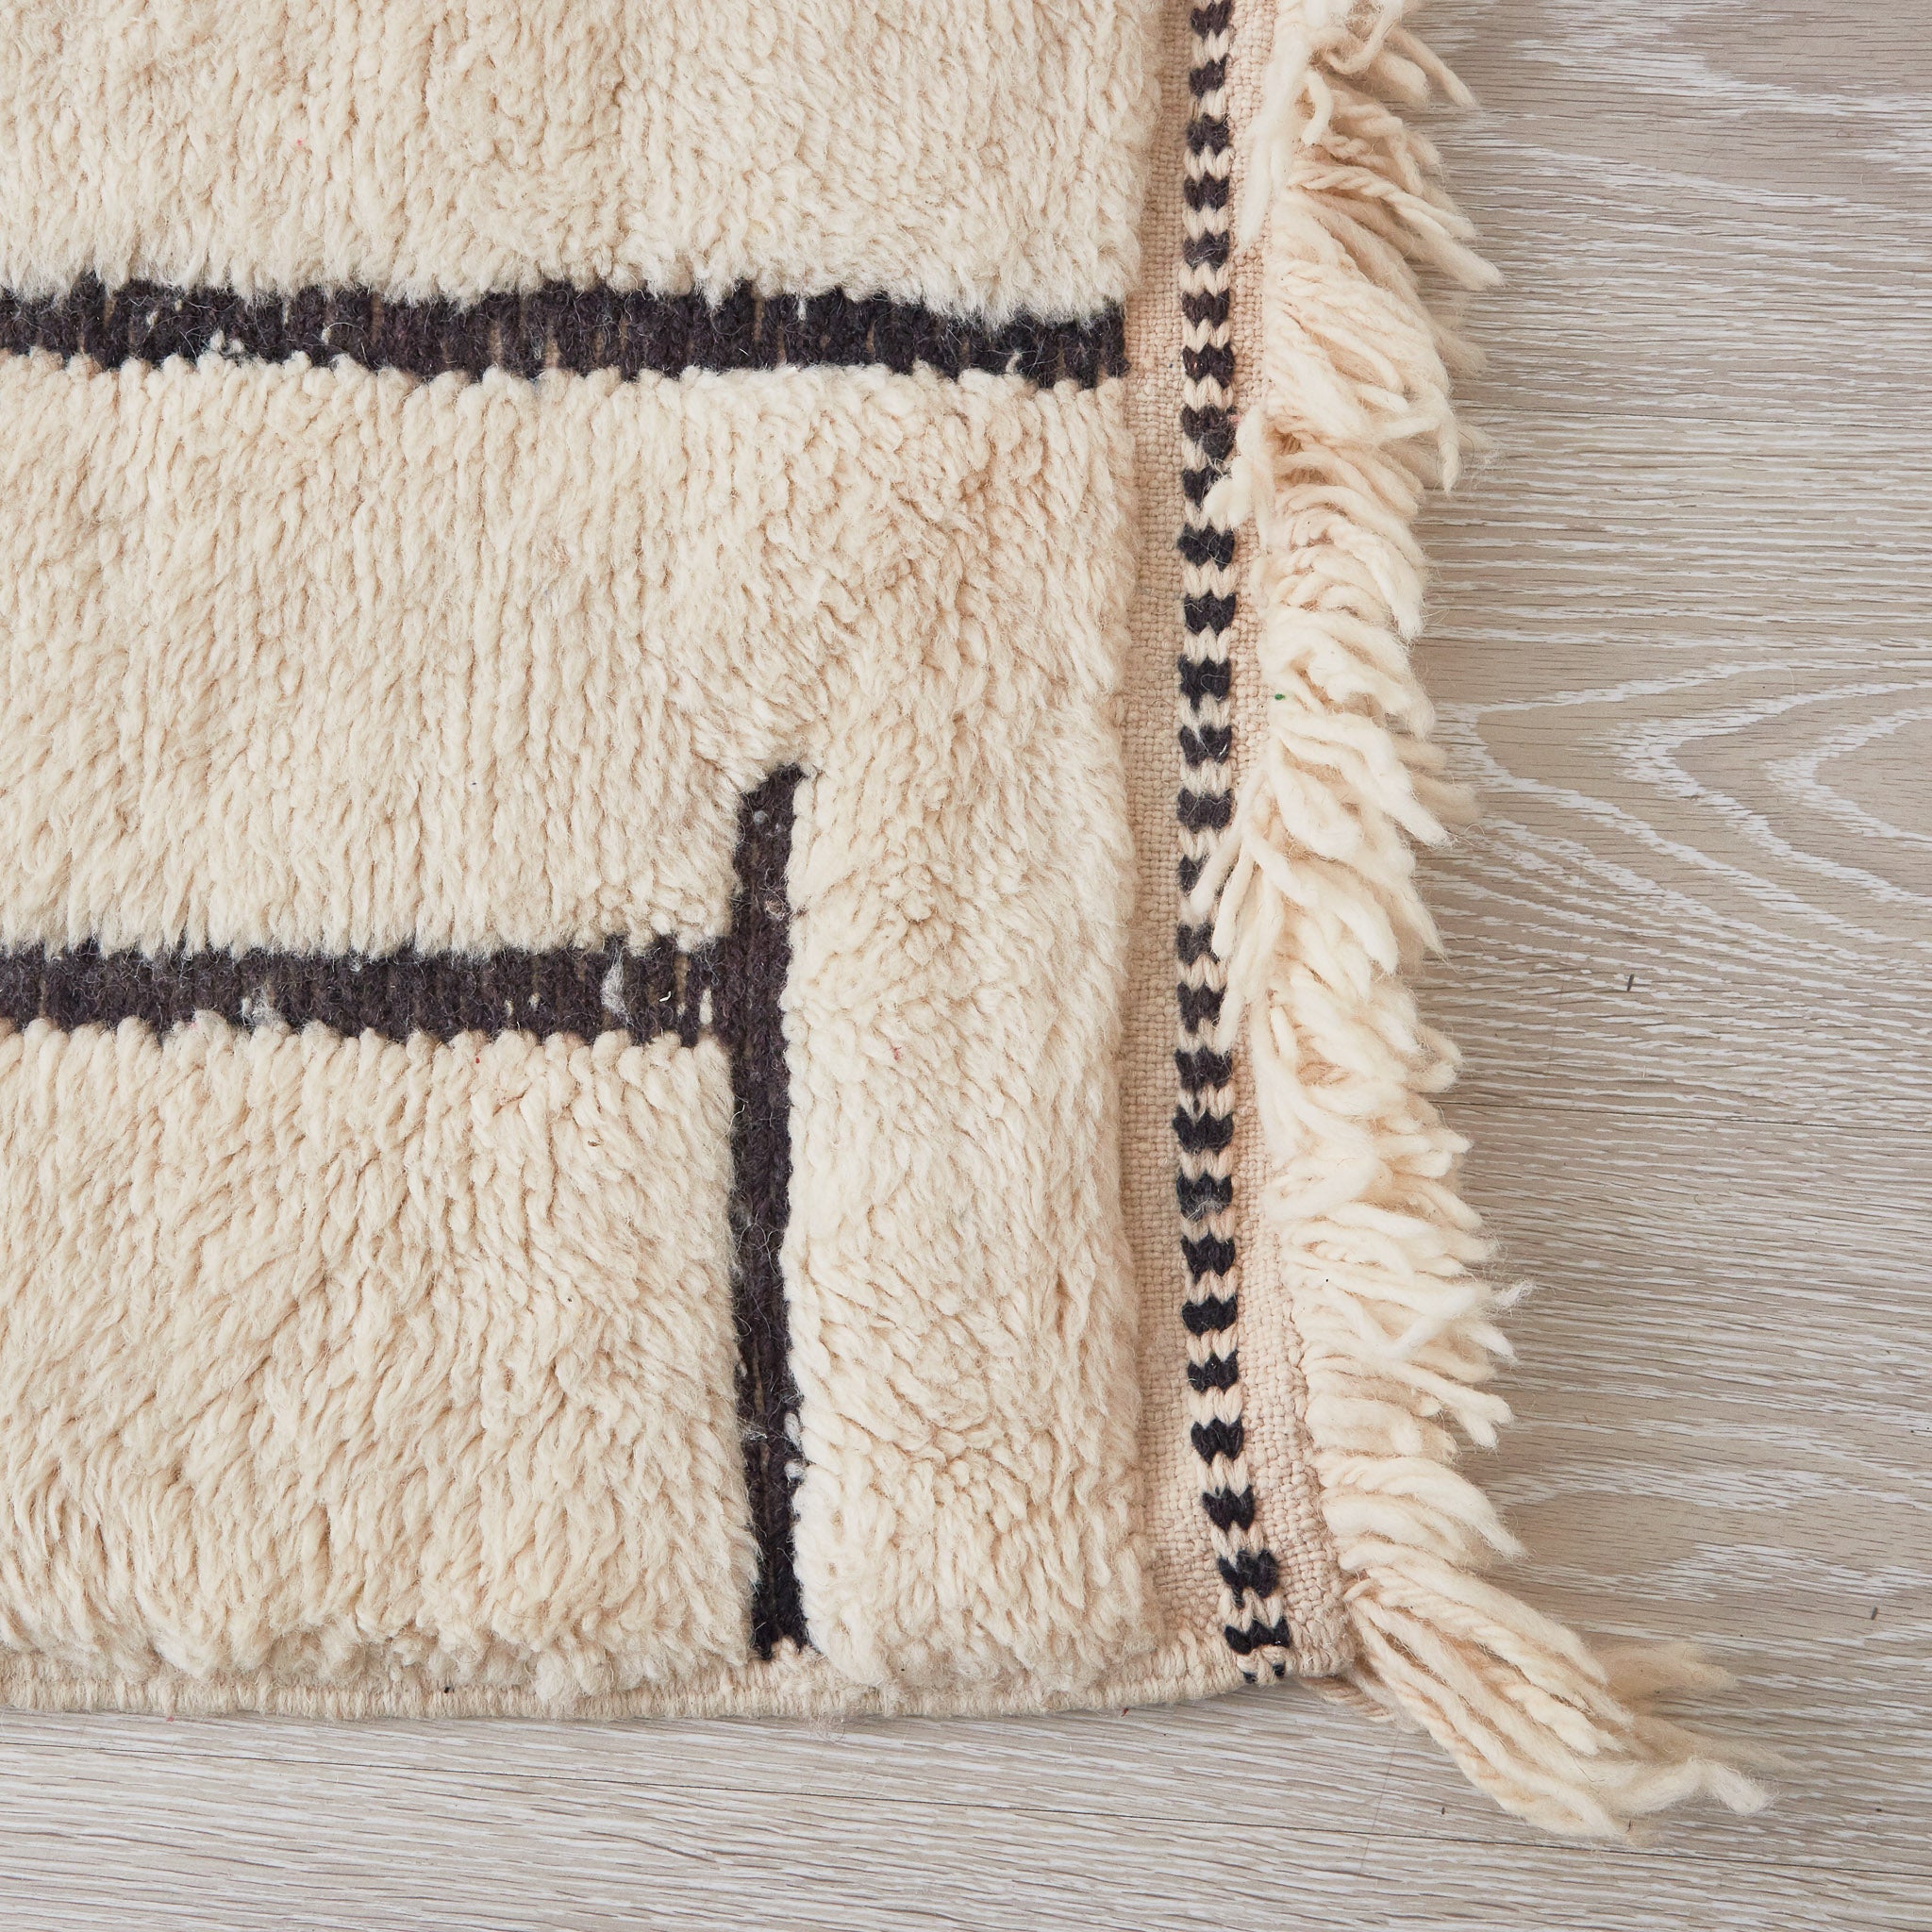 tappeto beni mrirt in morbida lana a pelo lungo con righe nere su base bianca dettaglio frangia